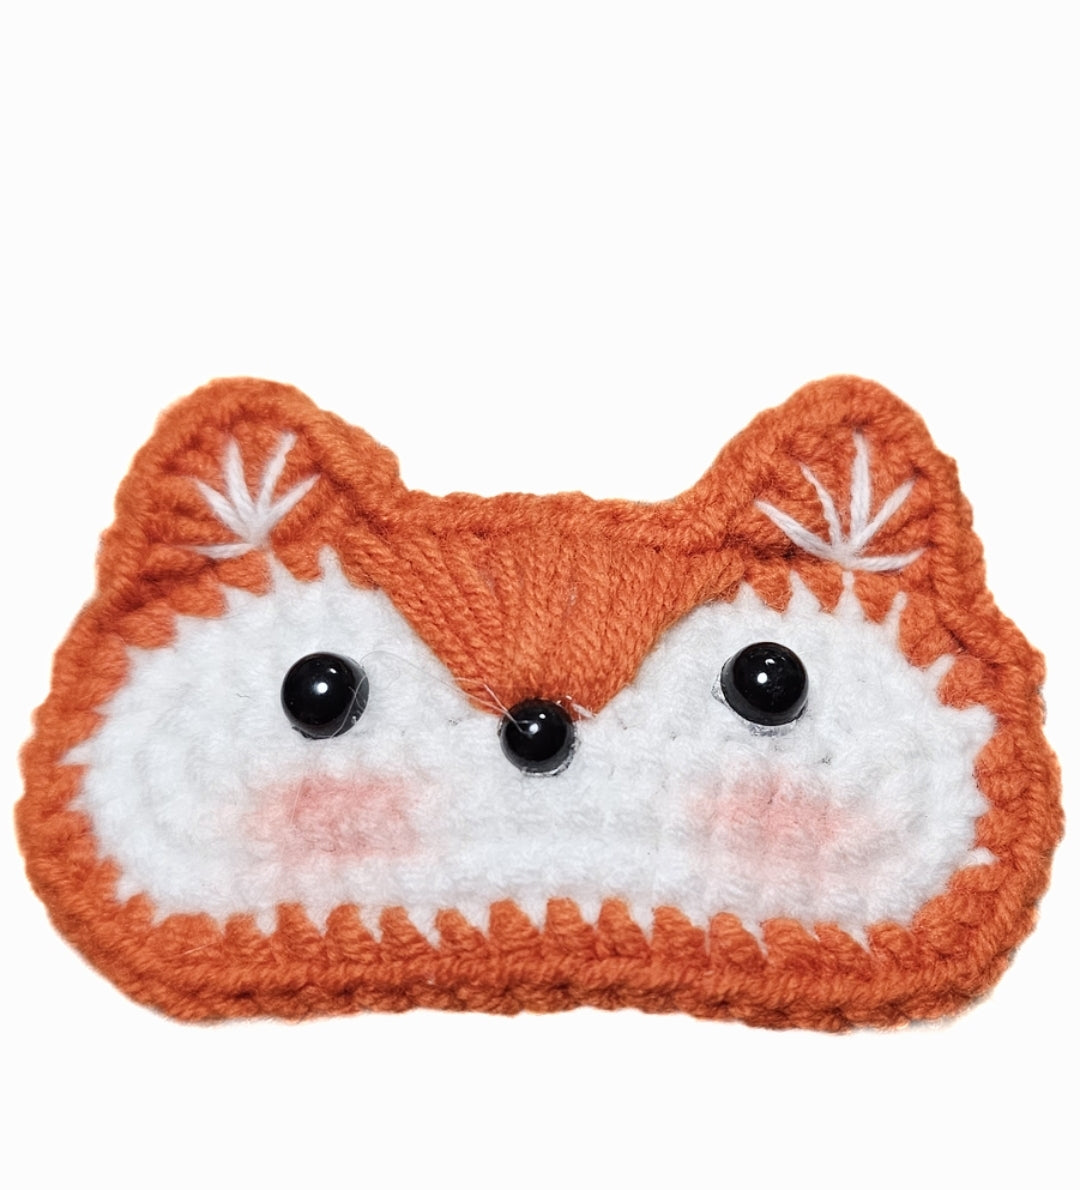 Fox and party bear crochet hair clips - handmade